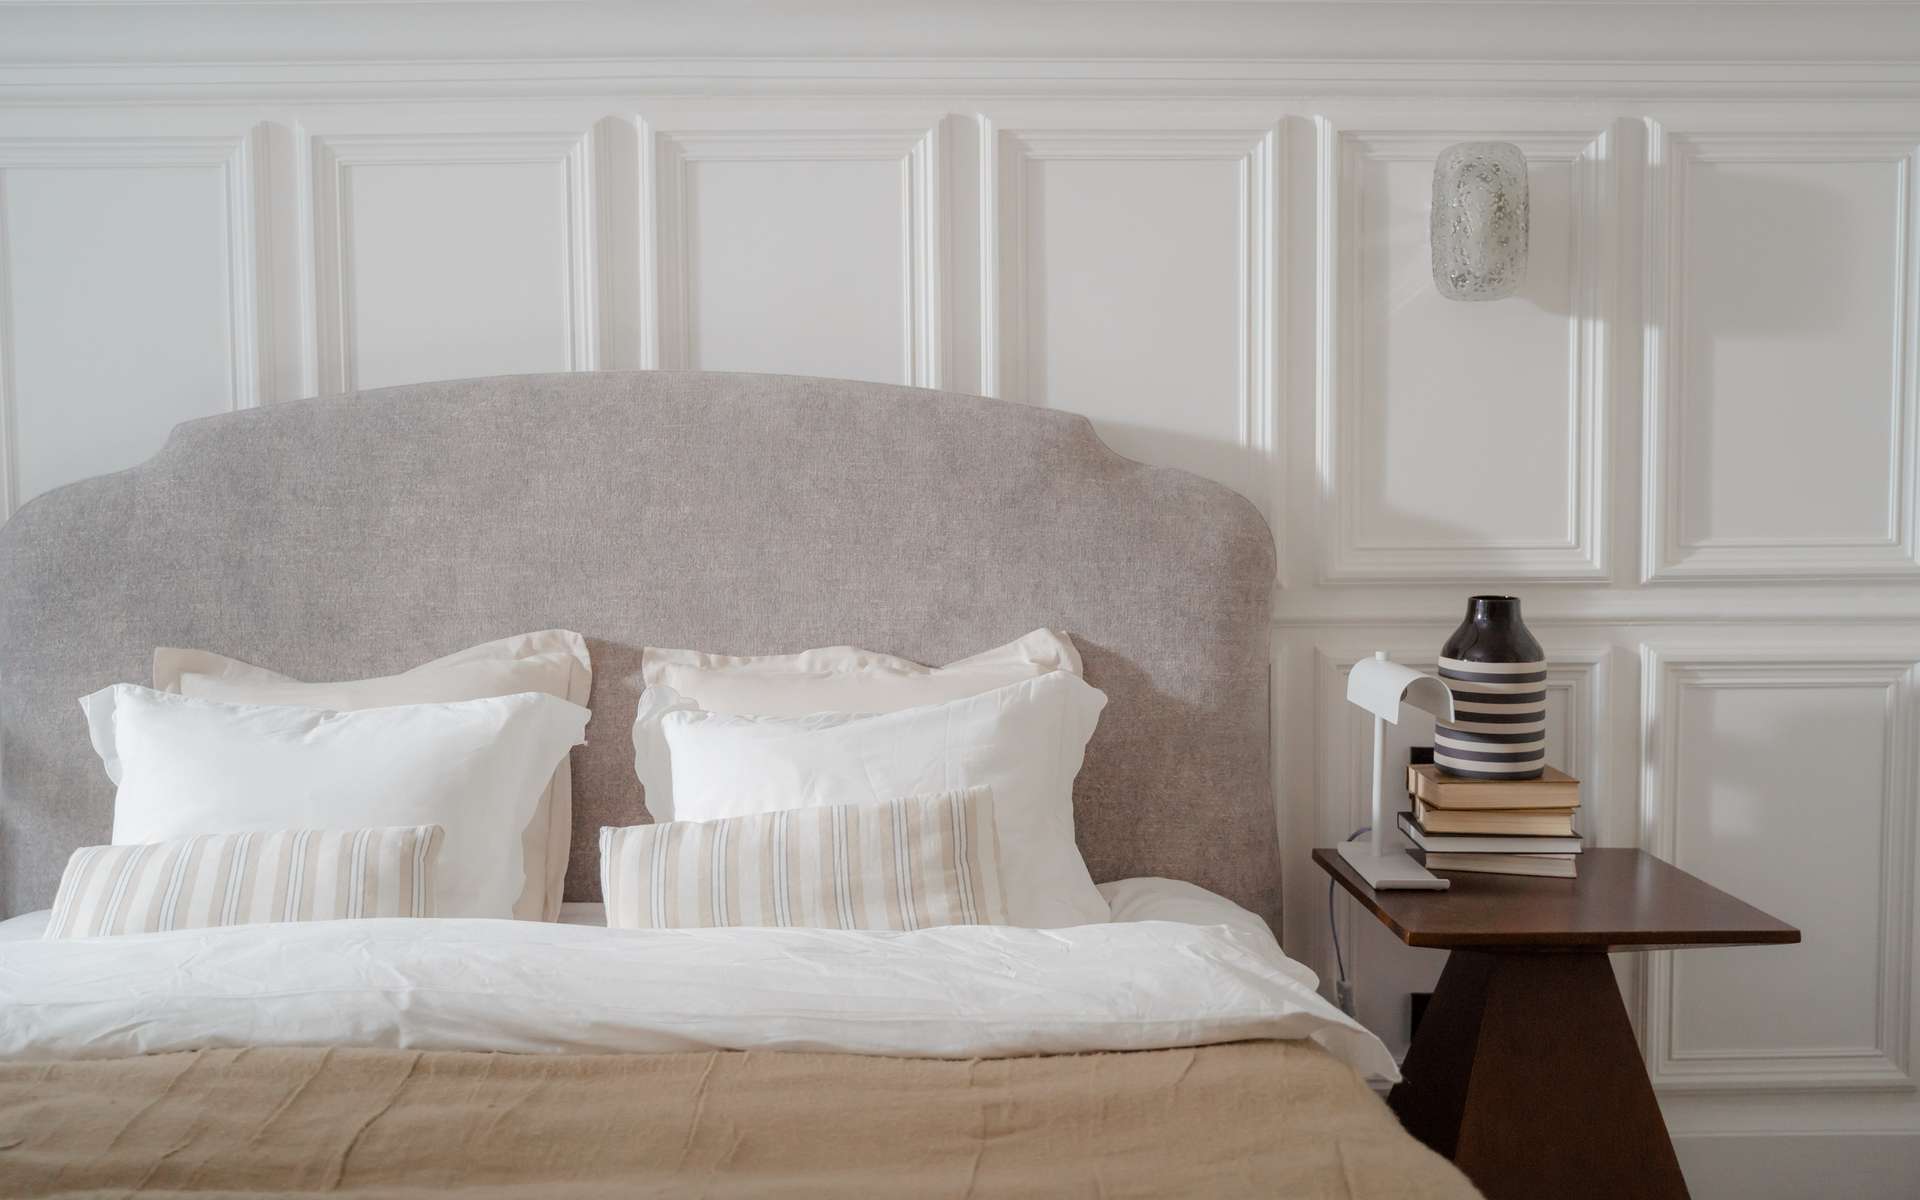 L'oreiller, un élément essentiel pour passer de bonnes nuits. © Ron Lach, Pexels